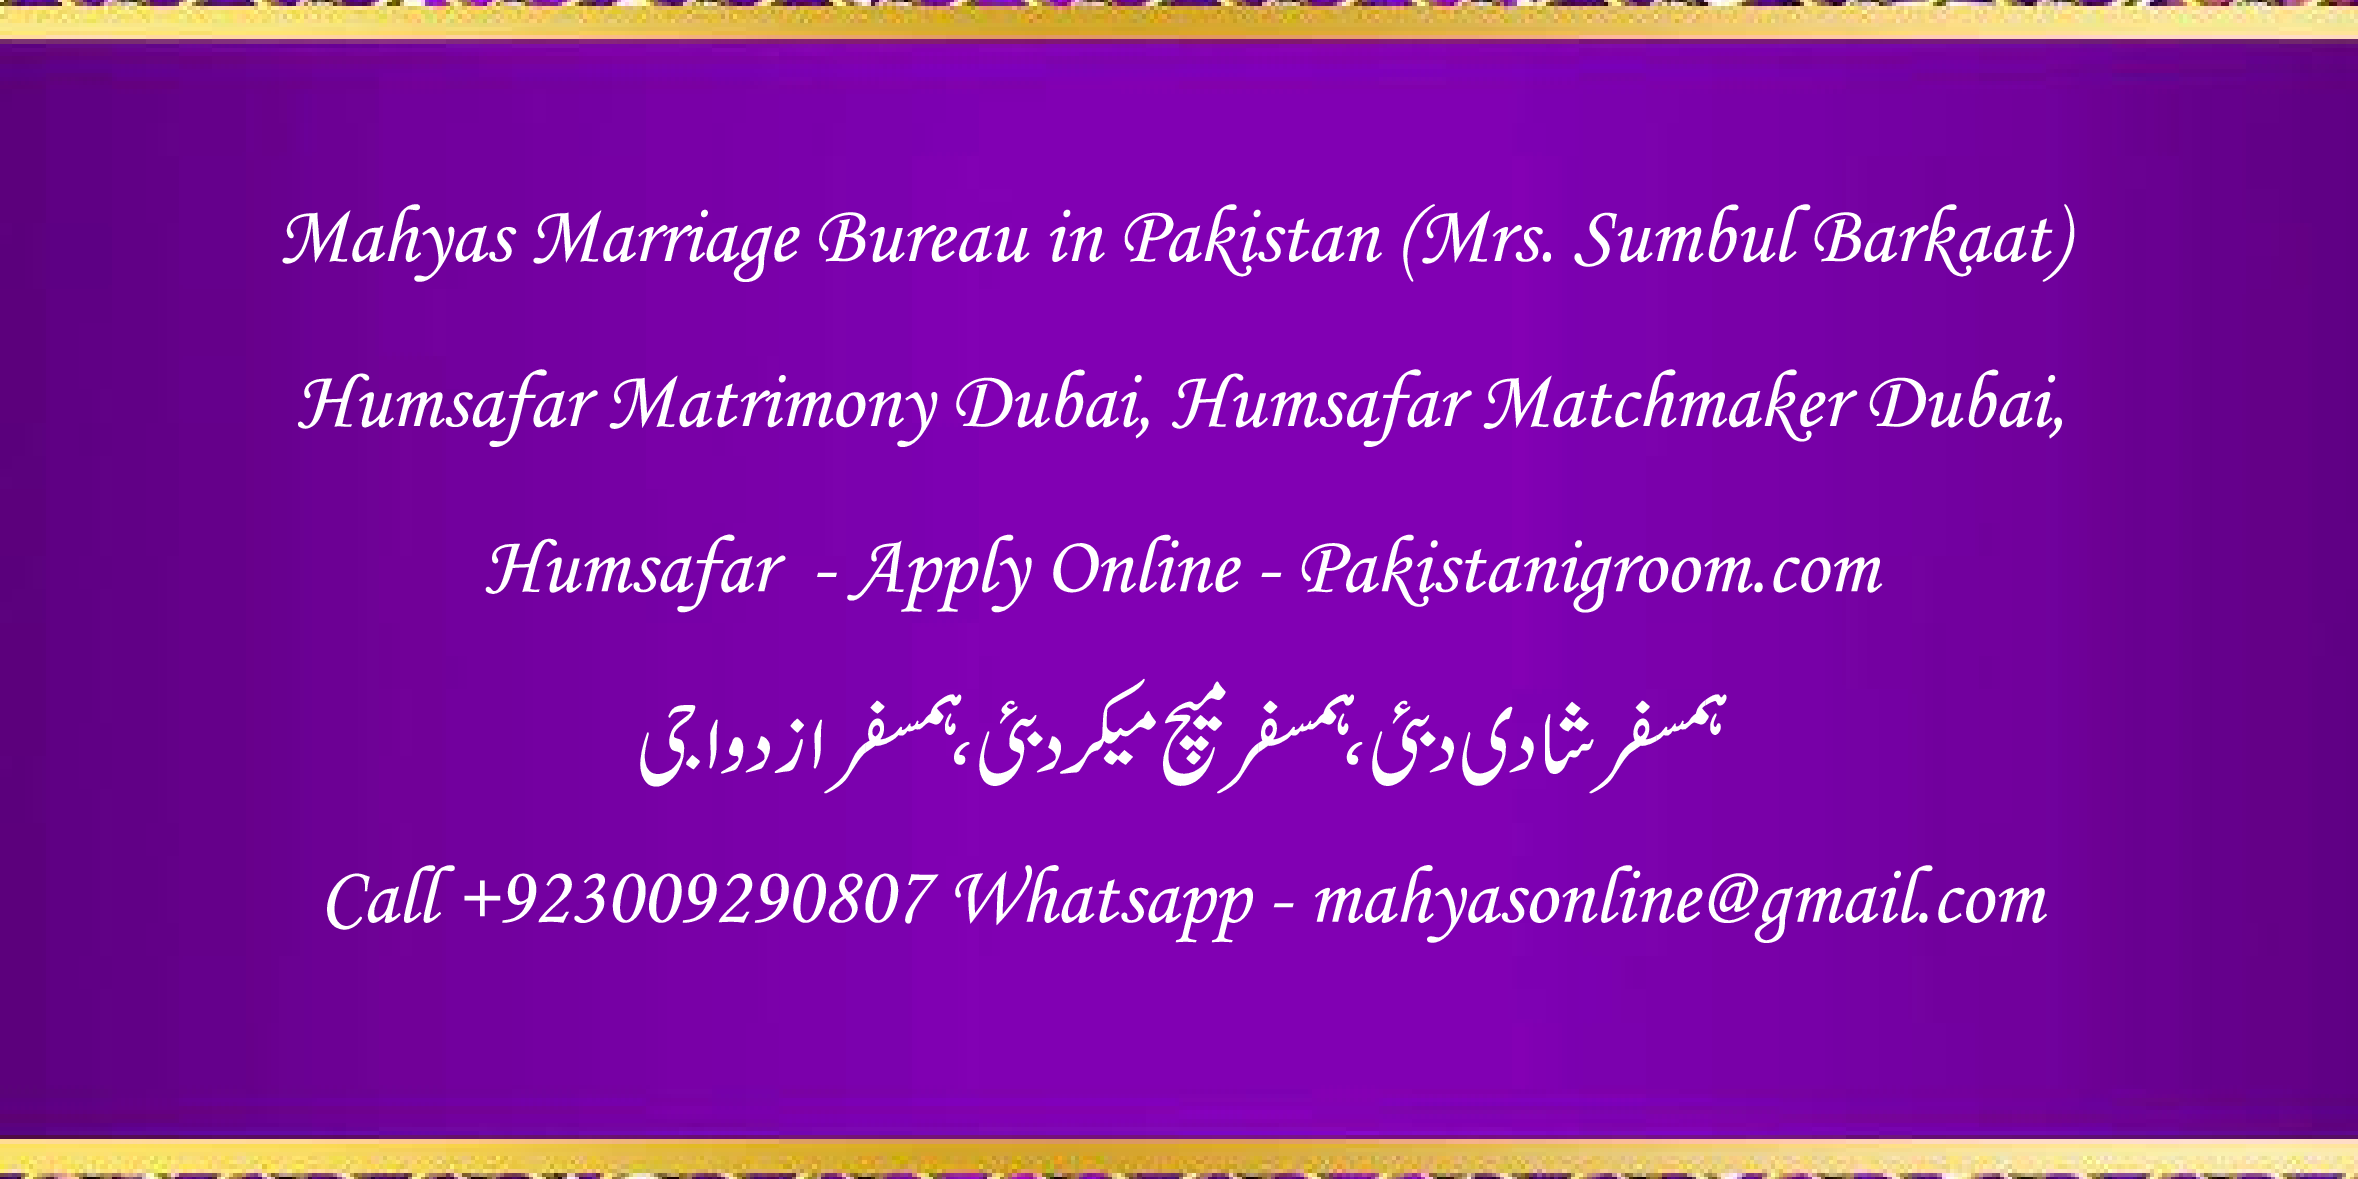 Mahyas-marriage-bureau-Karachi-Pakistan-for-Shia-Sunni-Remarriage-Divorce-Widow-Second-marriage-Punjabi-Pashto-Urdu-15.png